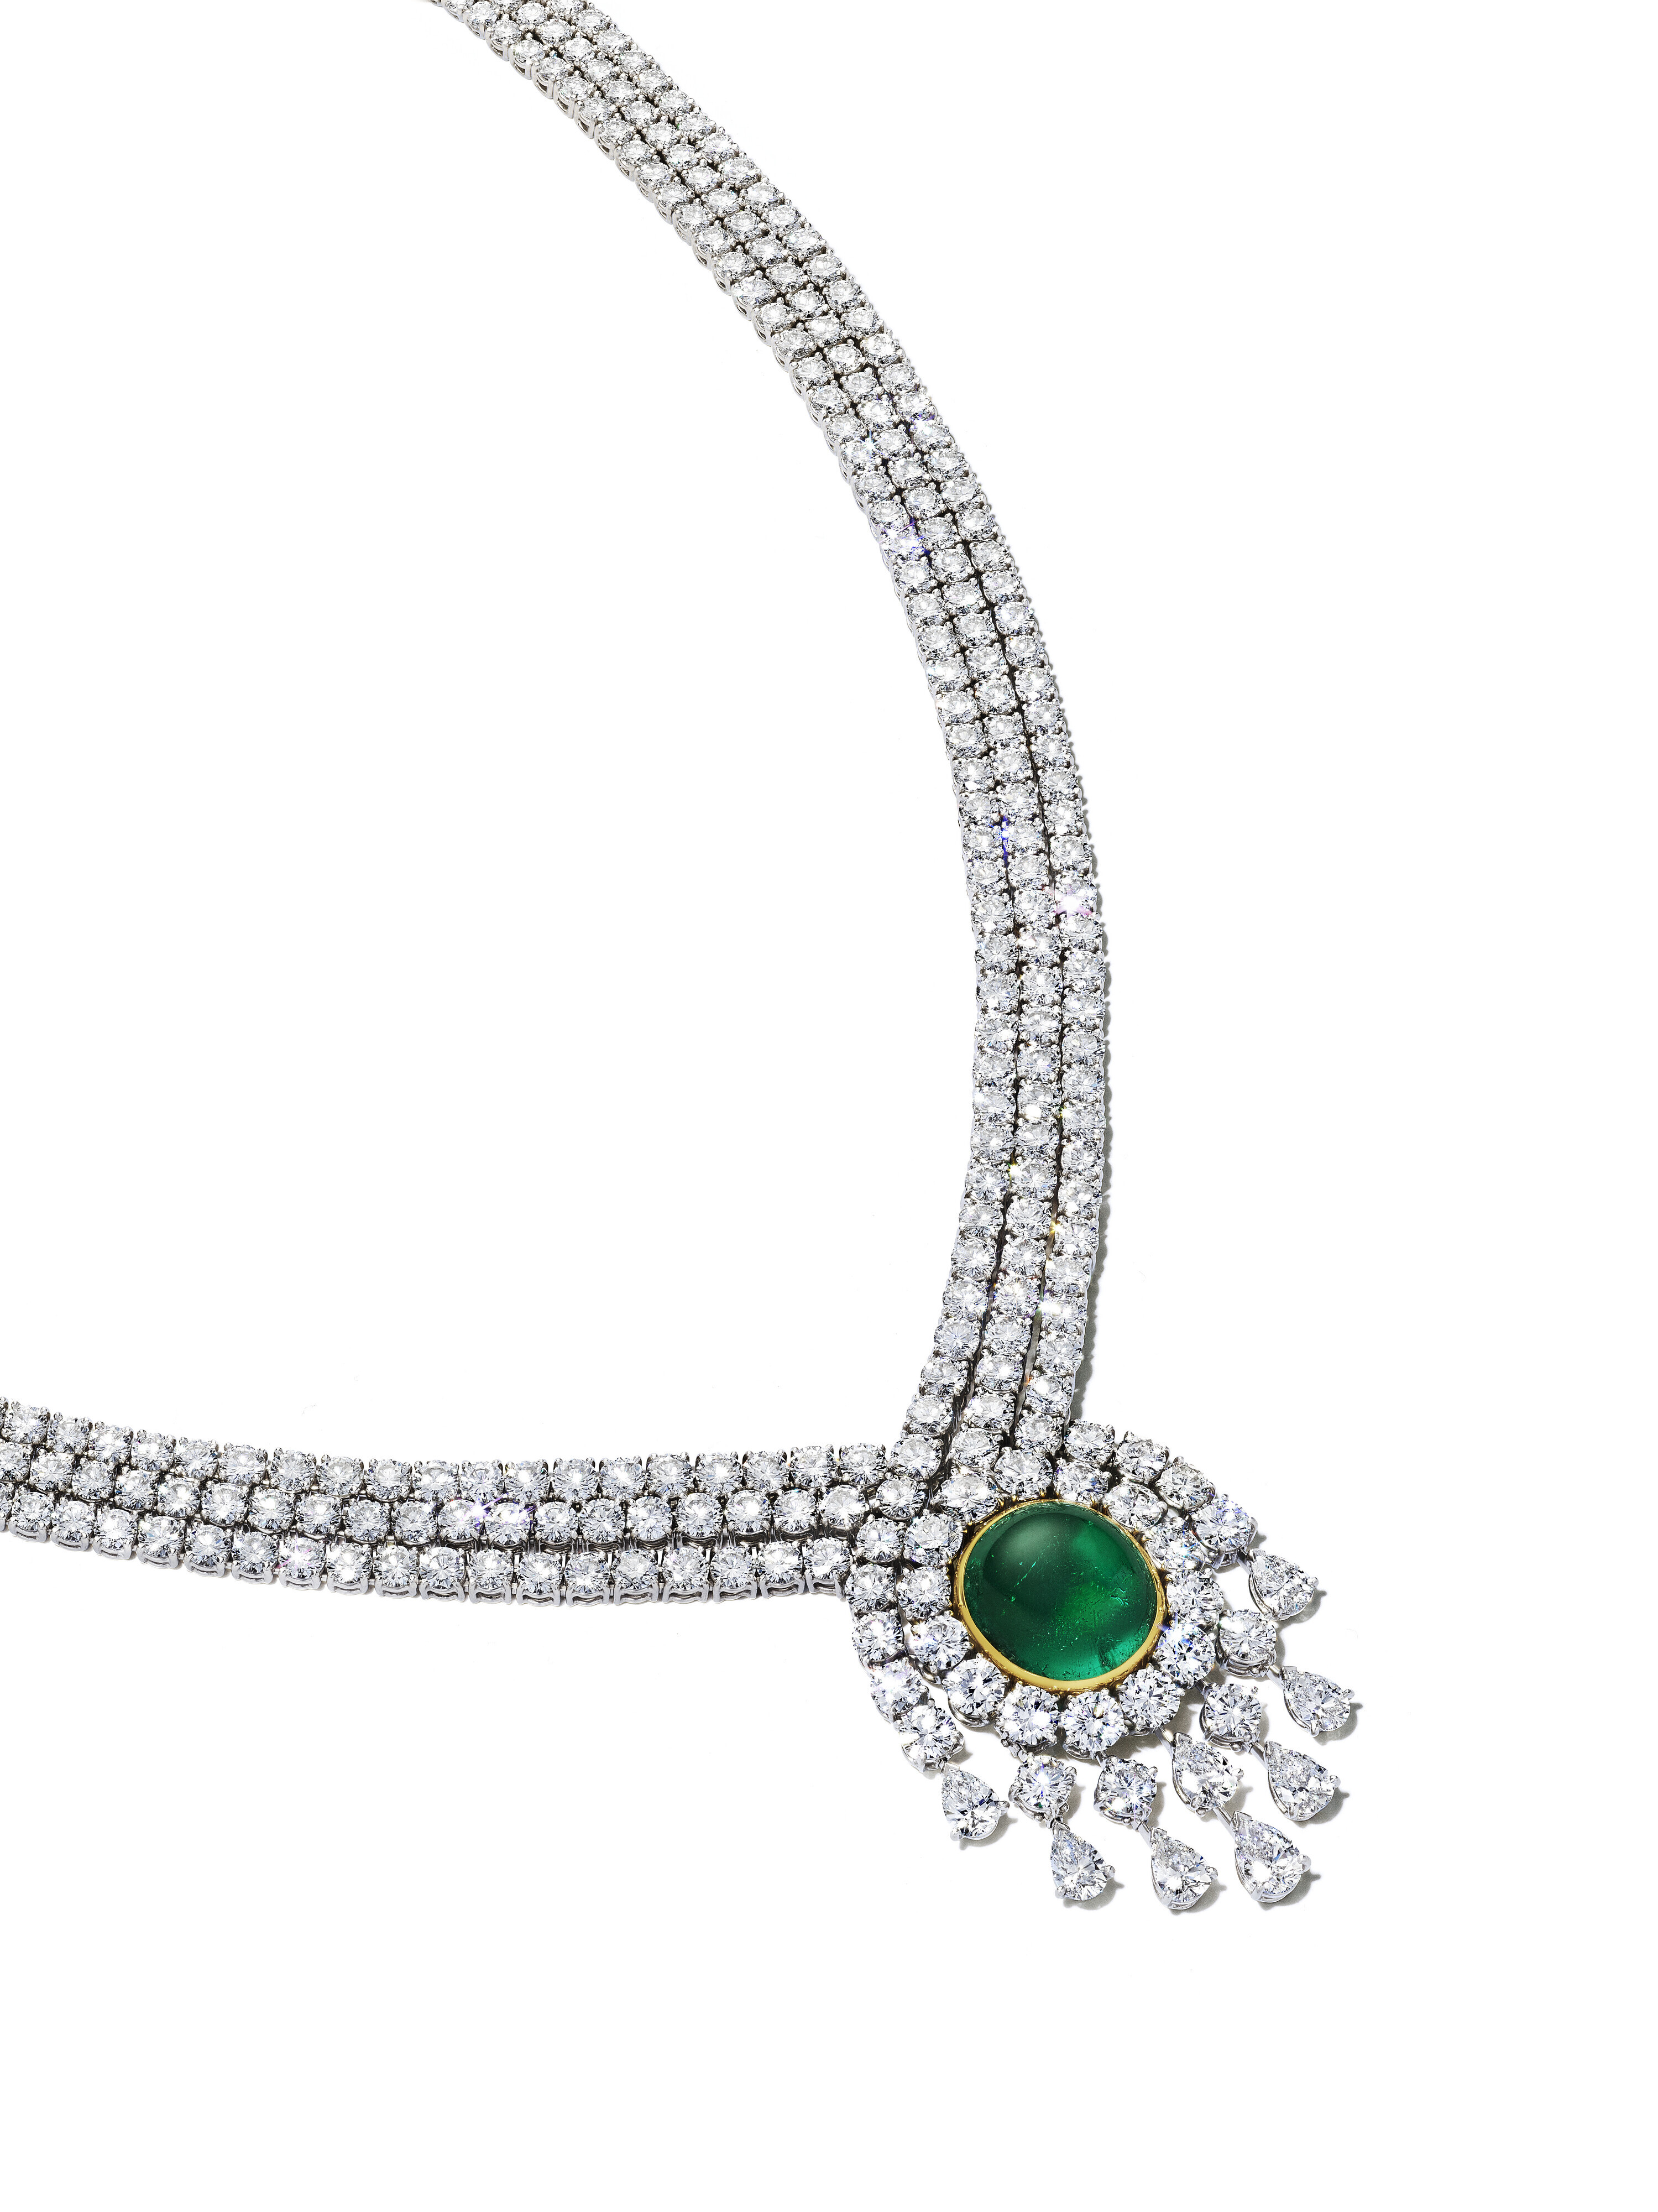 La maestría joyera de Van Cleef & Arpels se expresa con todo su poder en este collar a base de esmeraldas y diamantes con un precio de salida 200.000 a 300.000 euros. - imagen 2